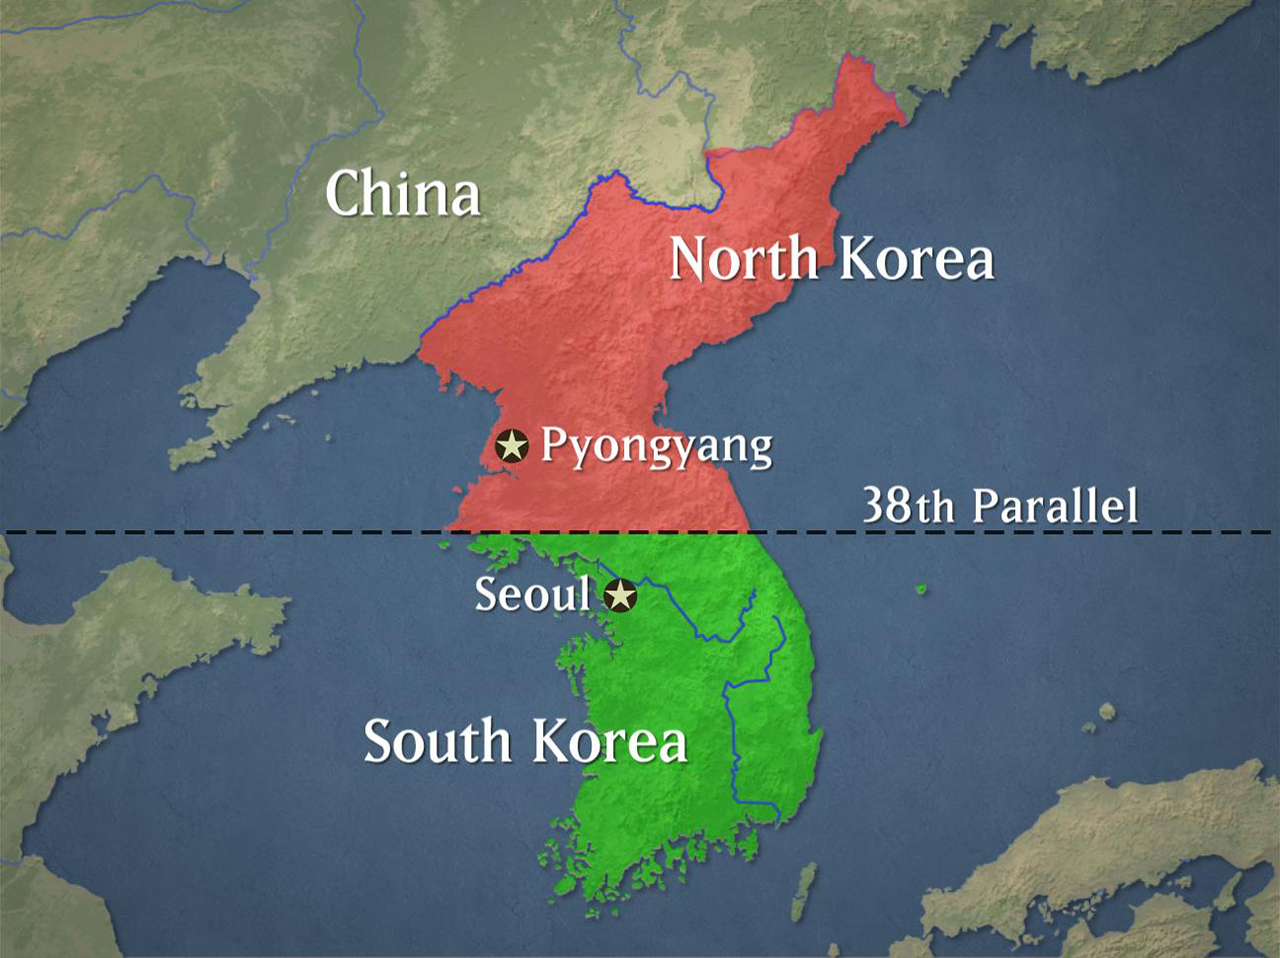 Corea del Sur acepta la mano tendida por el Norte proponiendo conversaciones